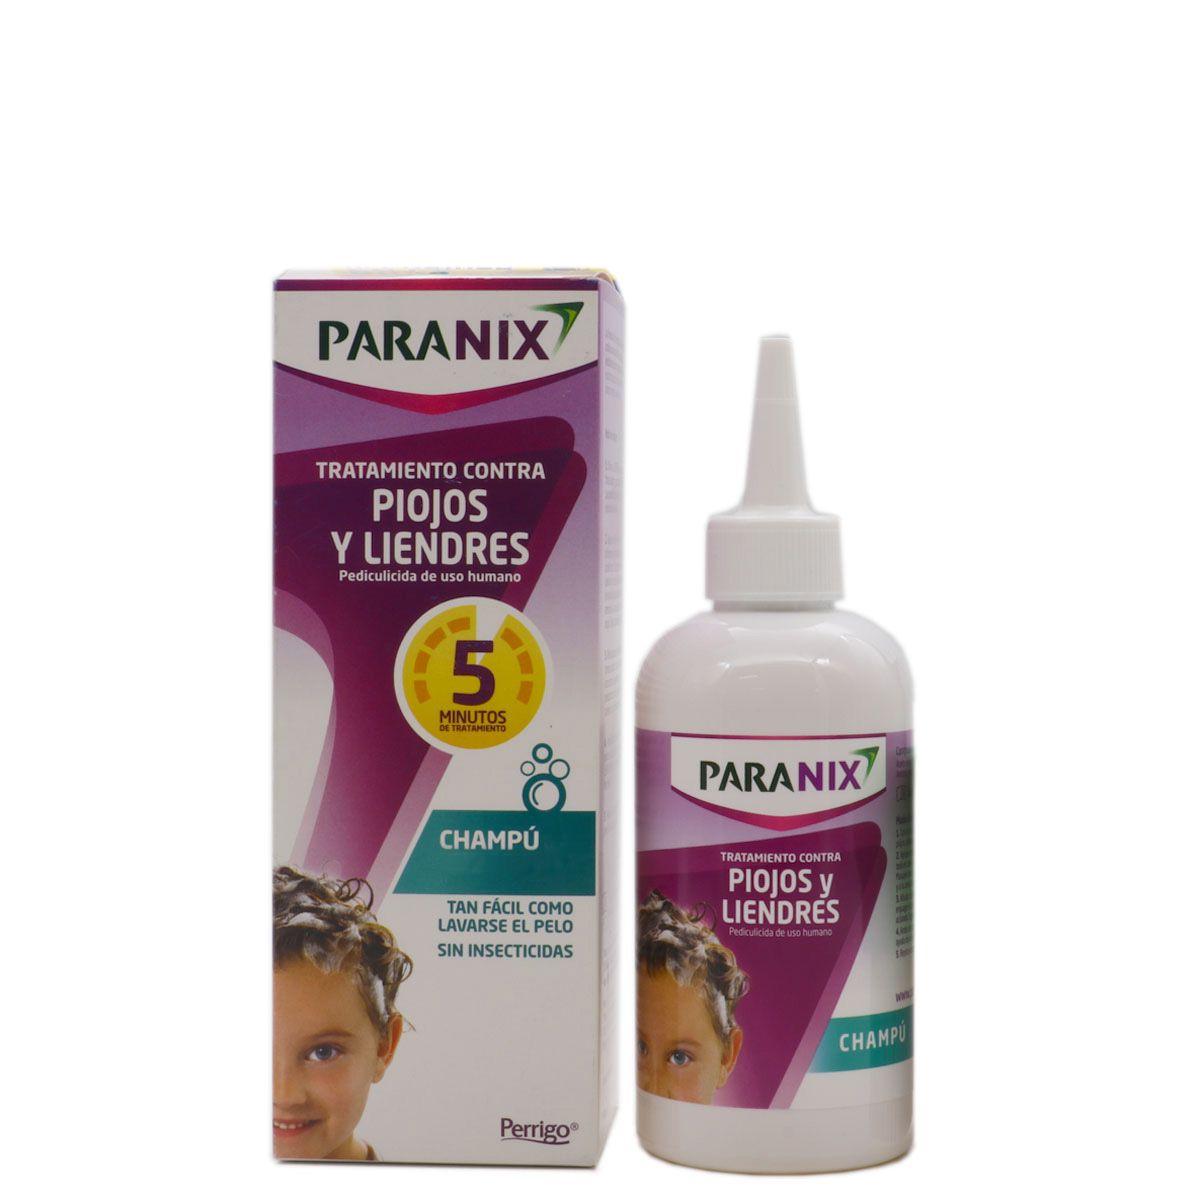 PARANIX Tratamiento champú 200ml + lendrera contra piojos y liendres